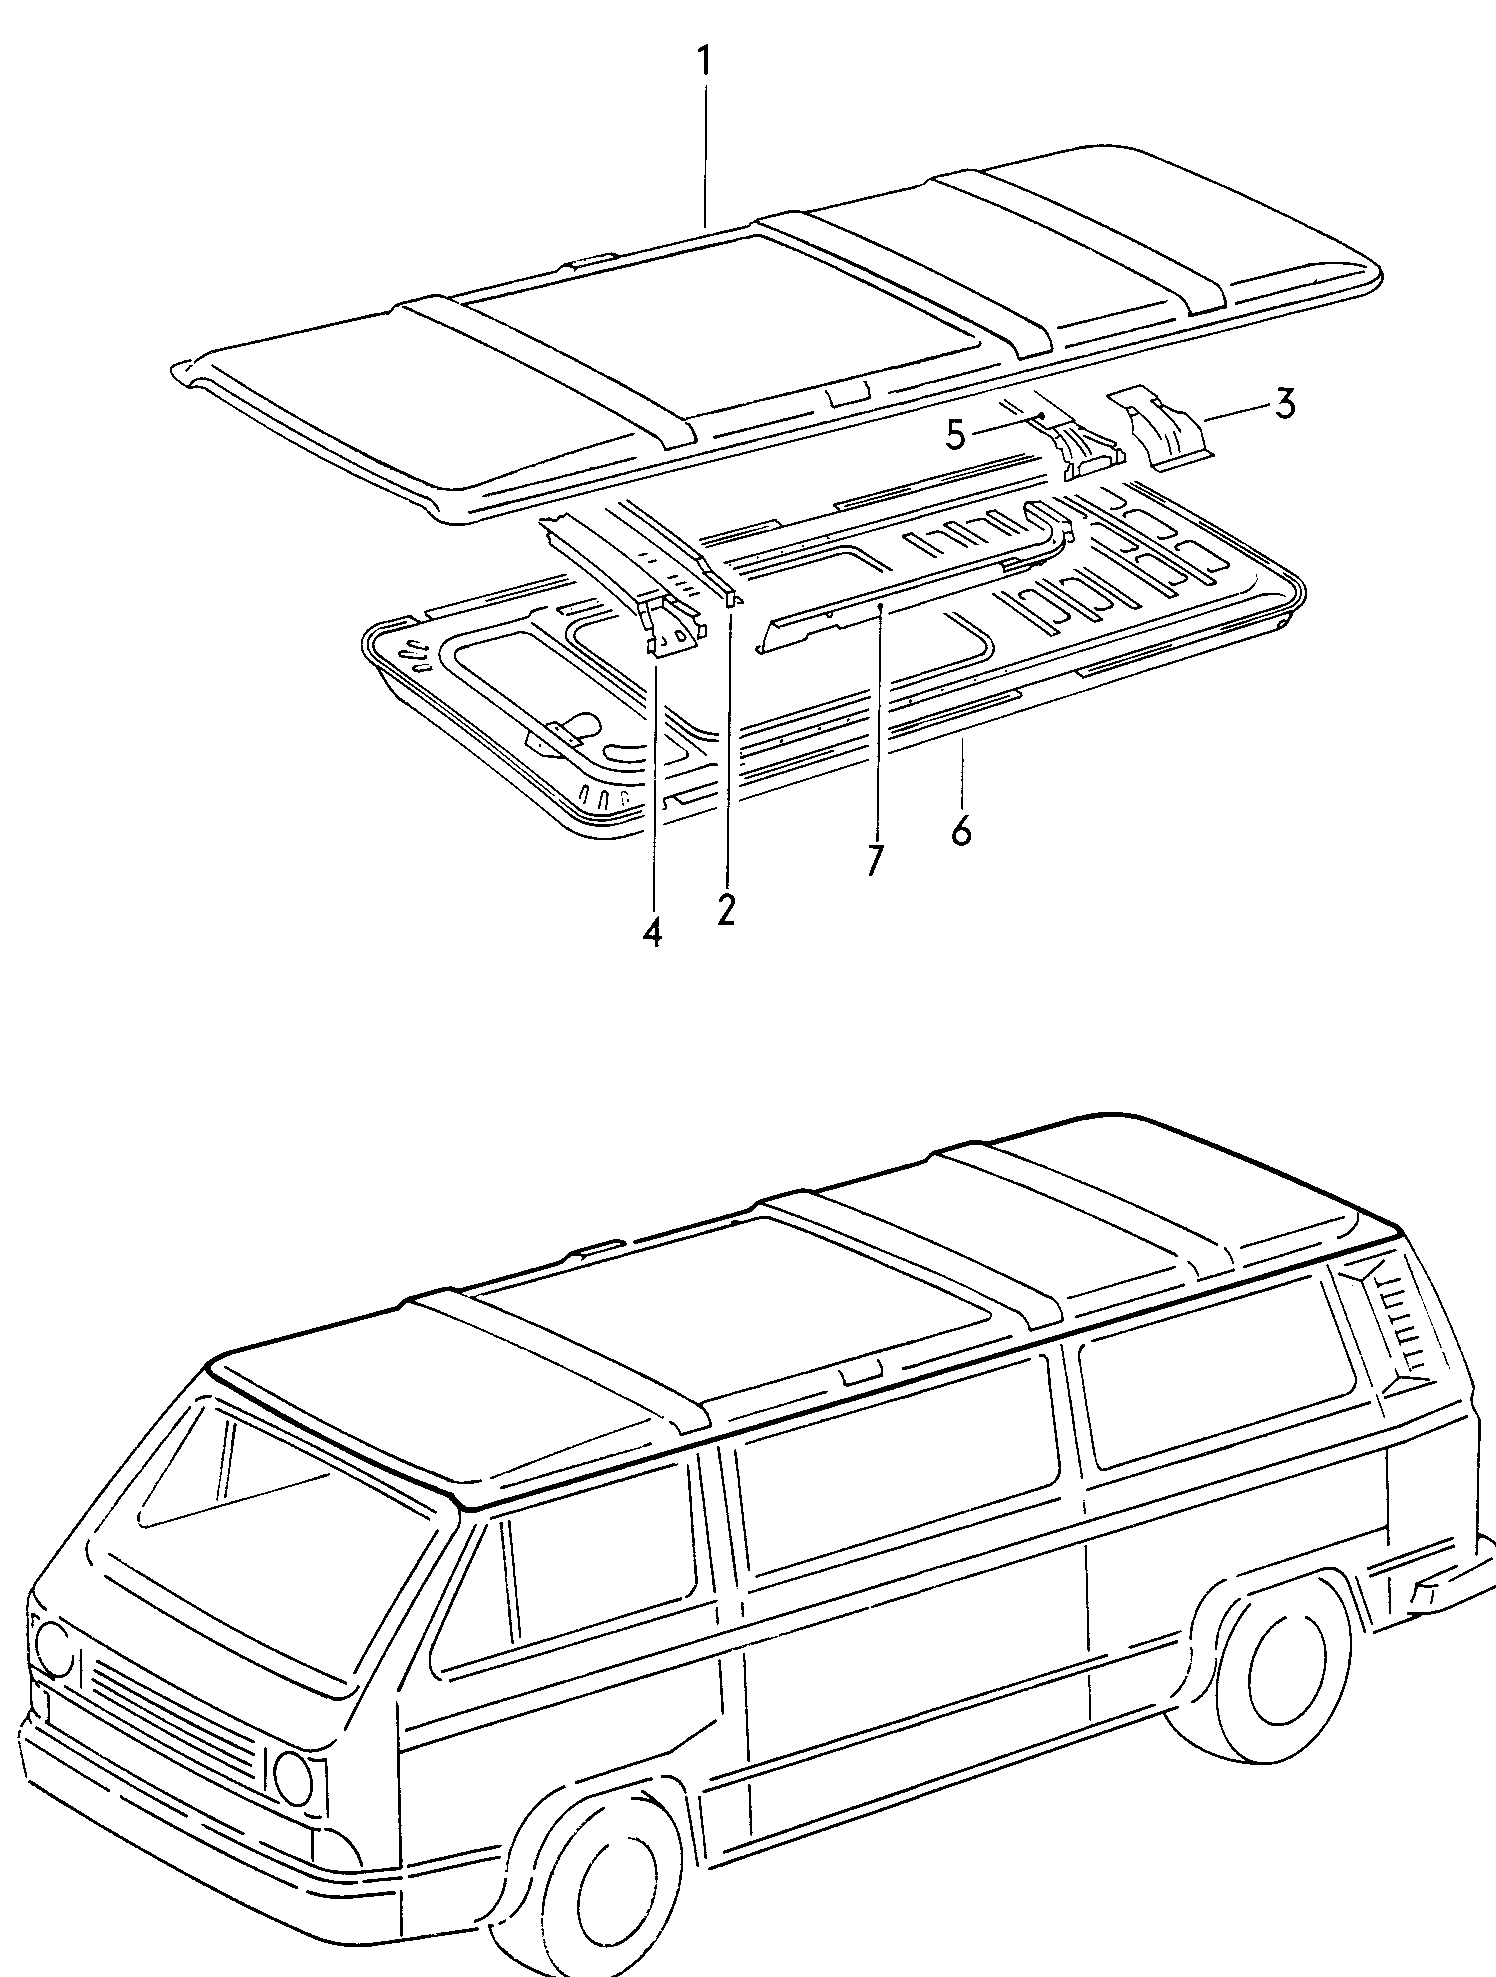 tettoper veicoli con azionamento<br>manuale tettuccio scorrevole  - Typ 2/syncro - t2